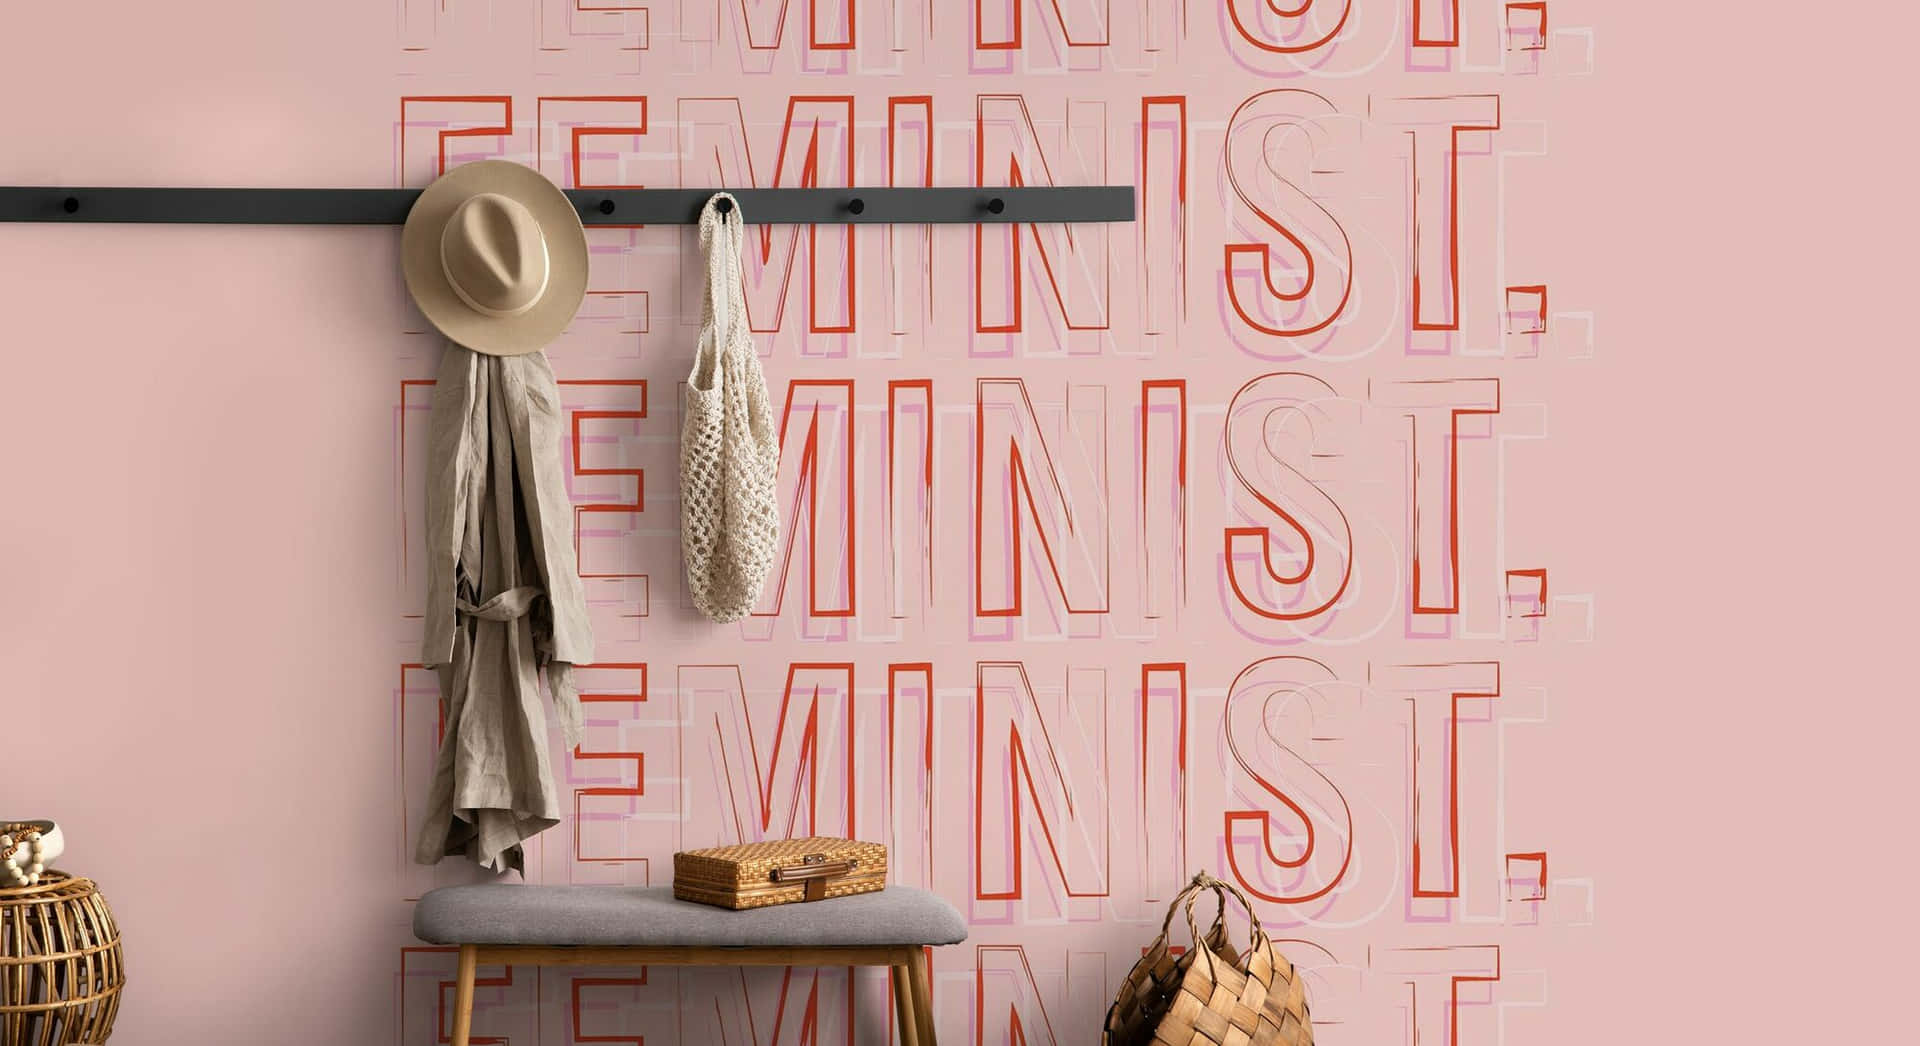 Feminist Styled Interior Design Wallpaper